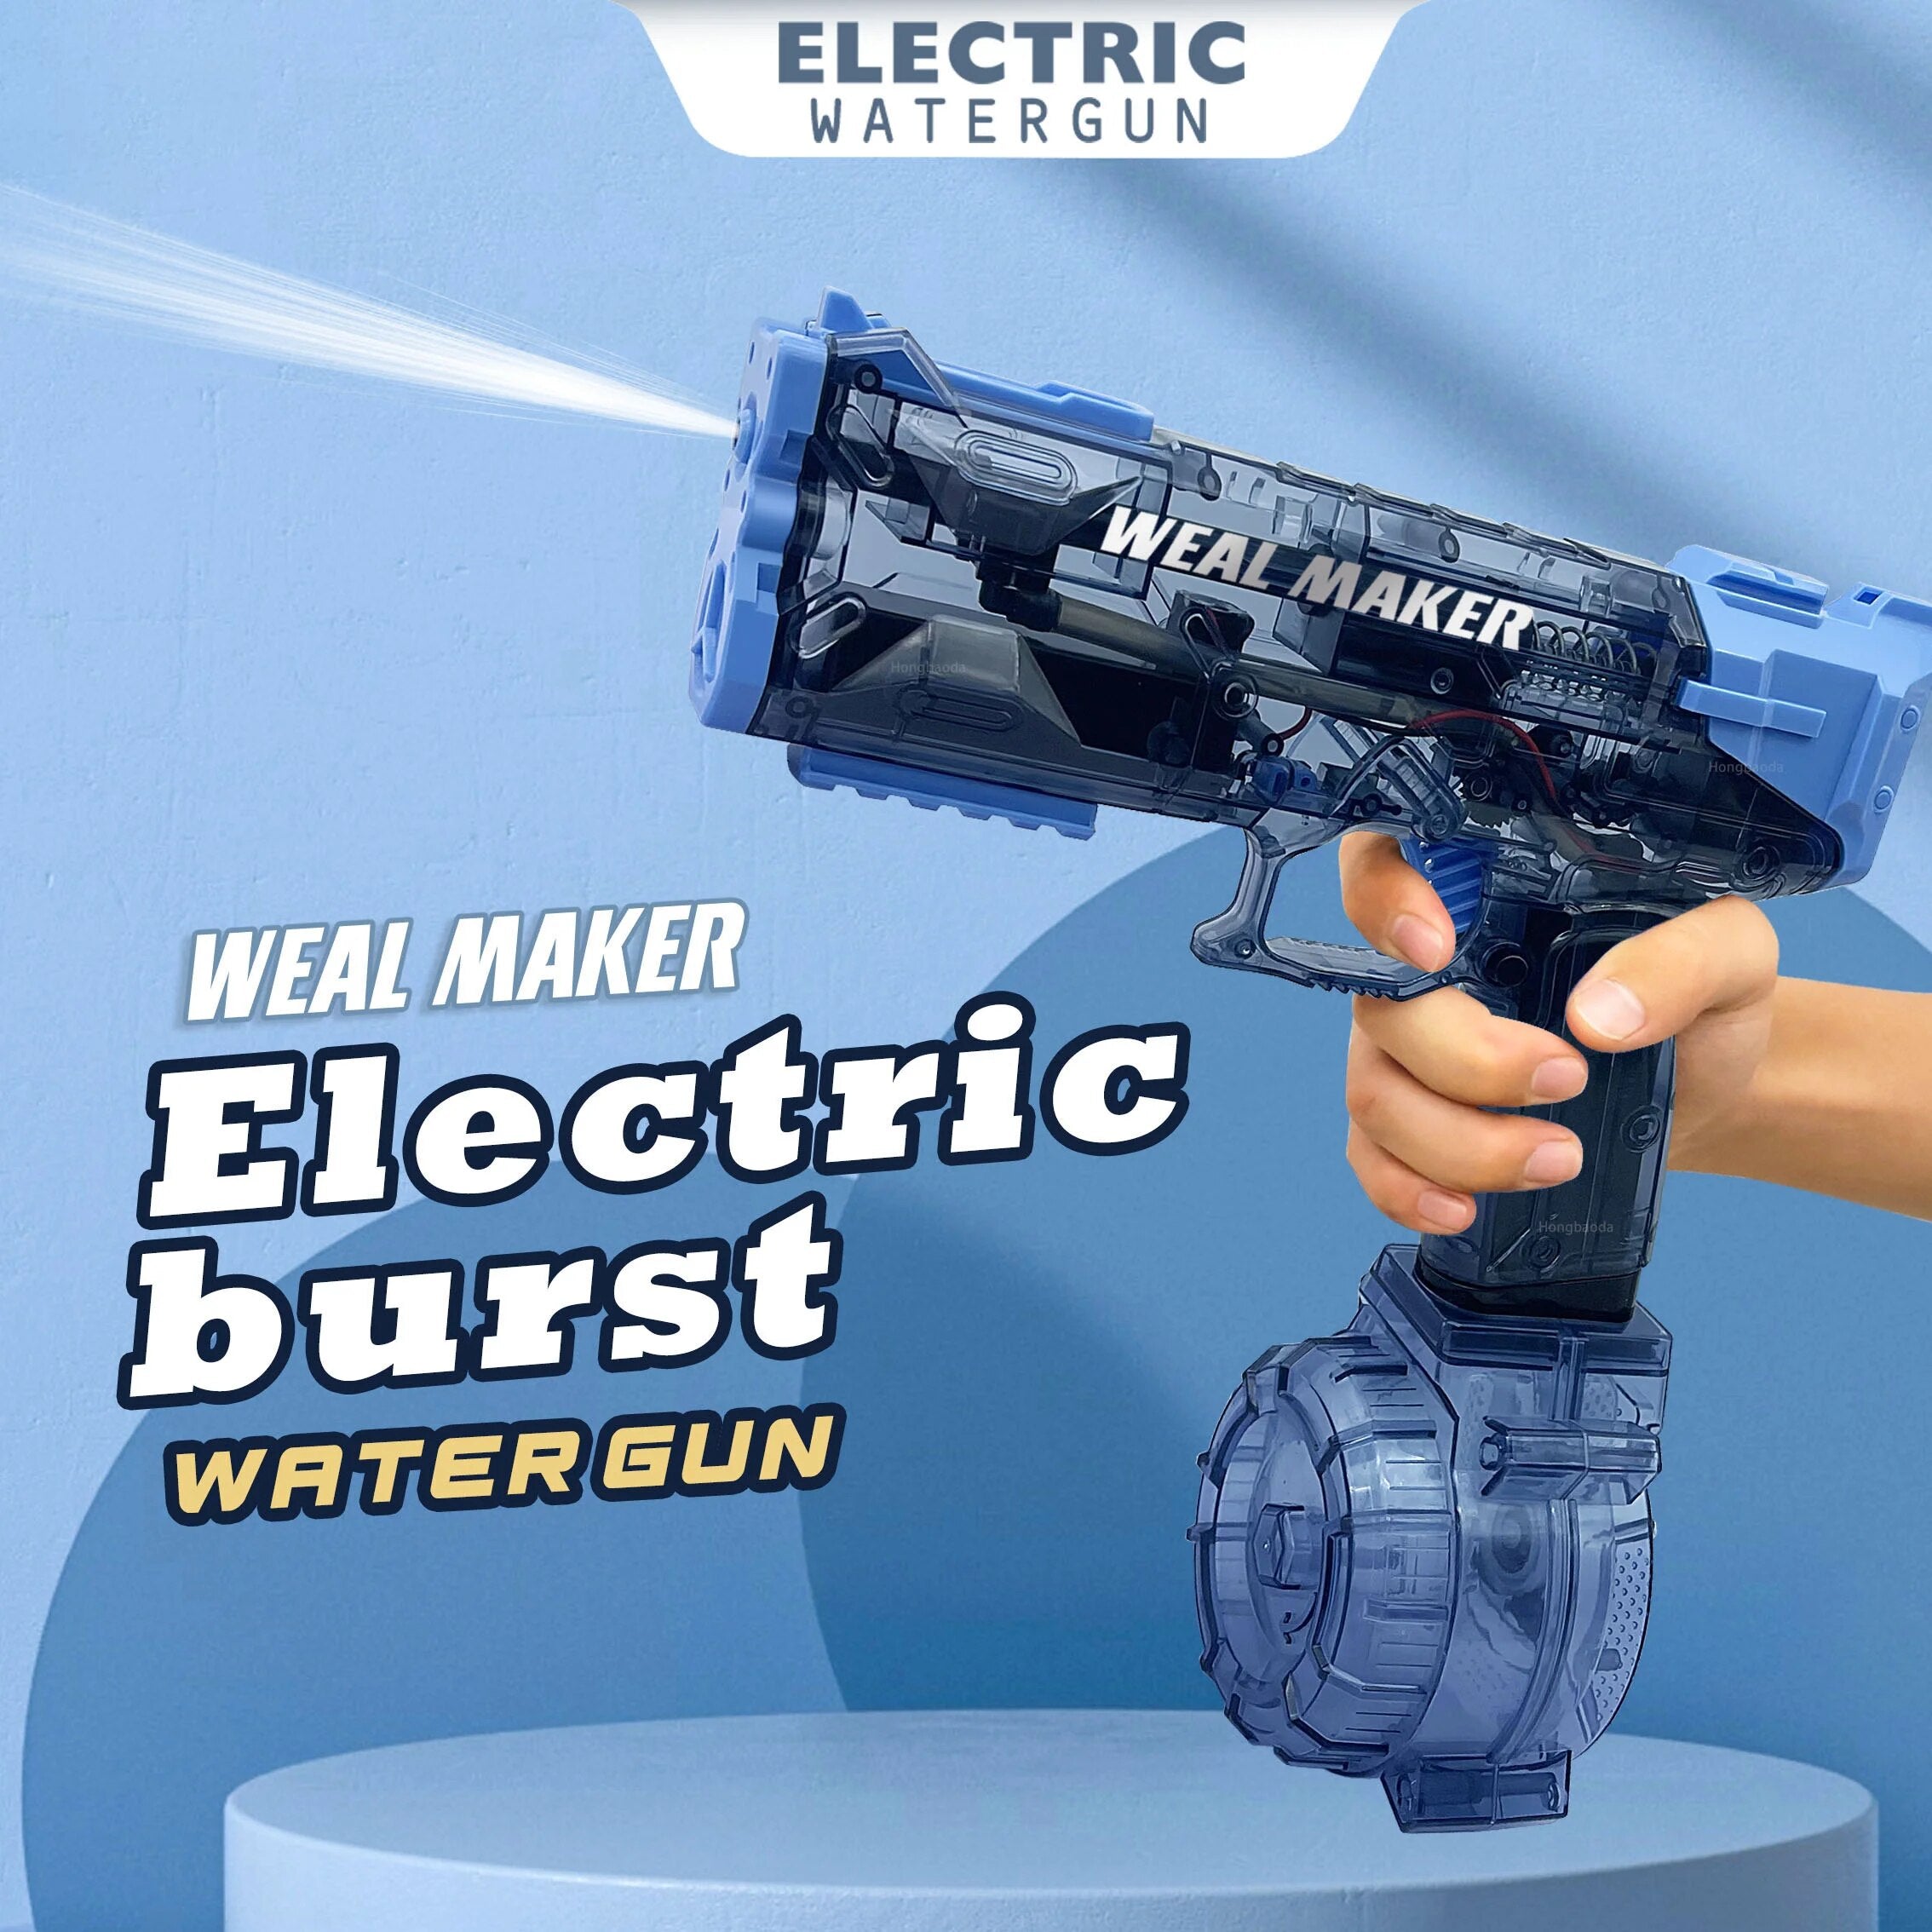 Electric Water Gun Kids Toy Gun Shooting